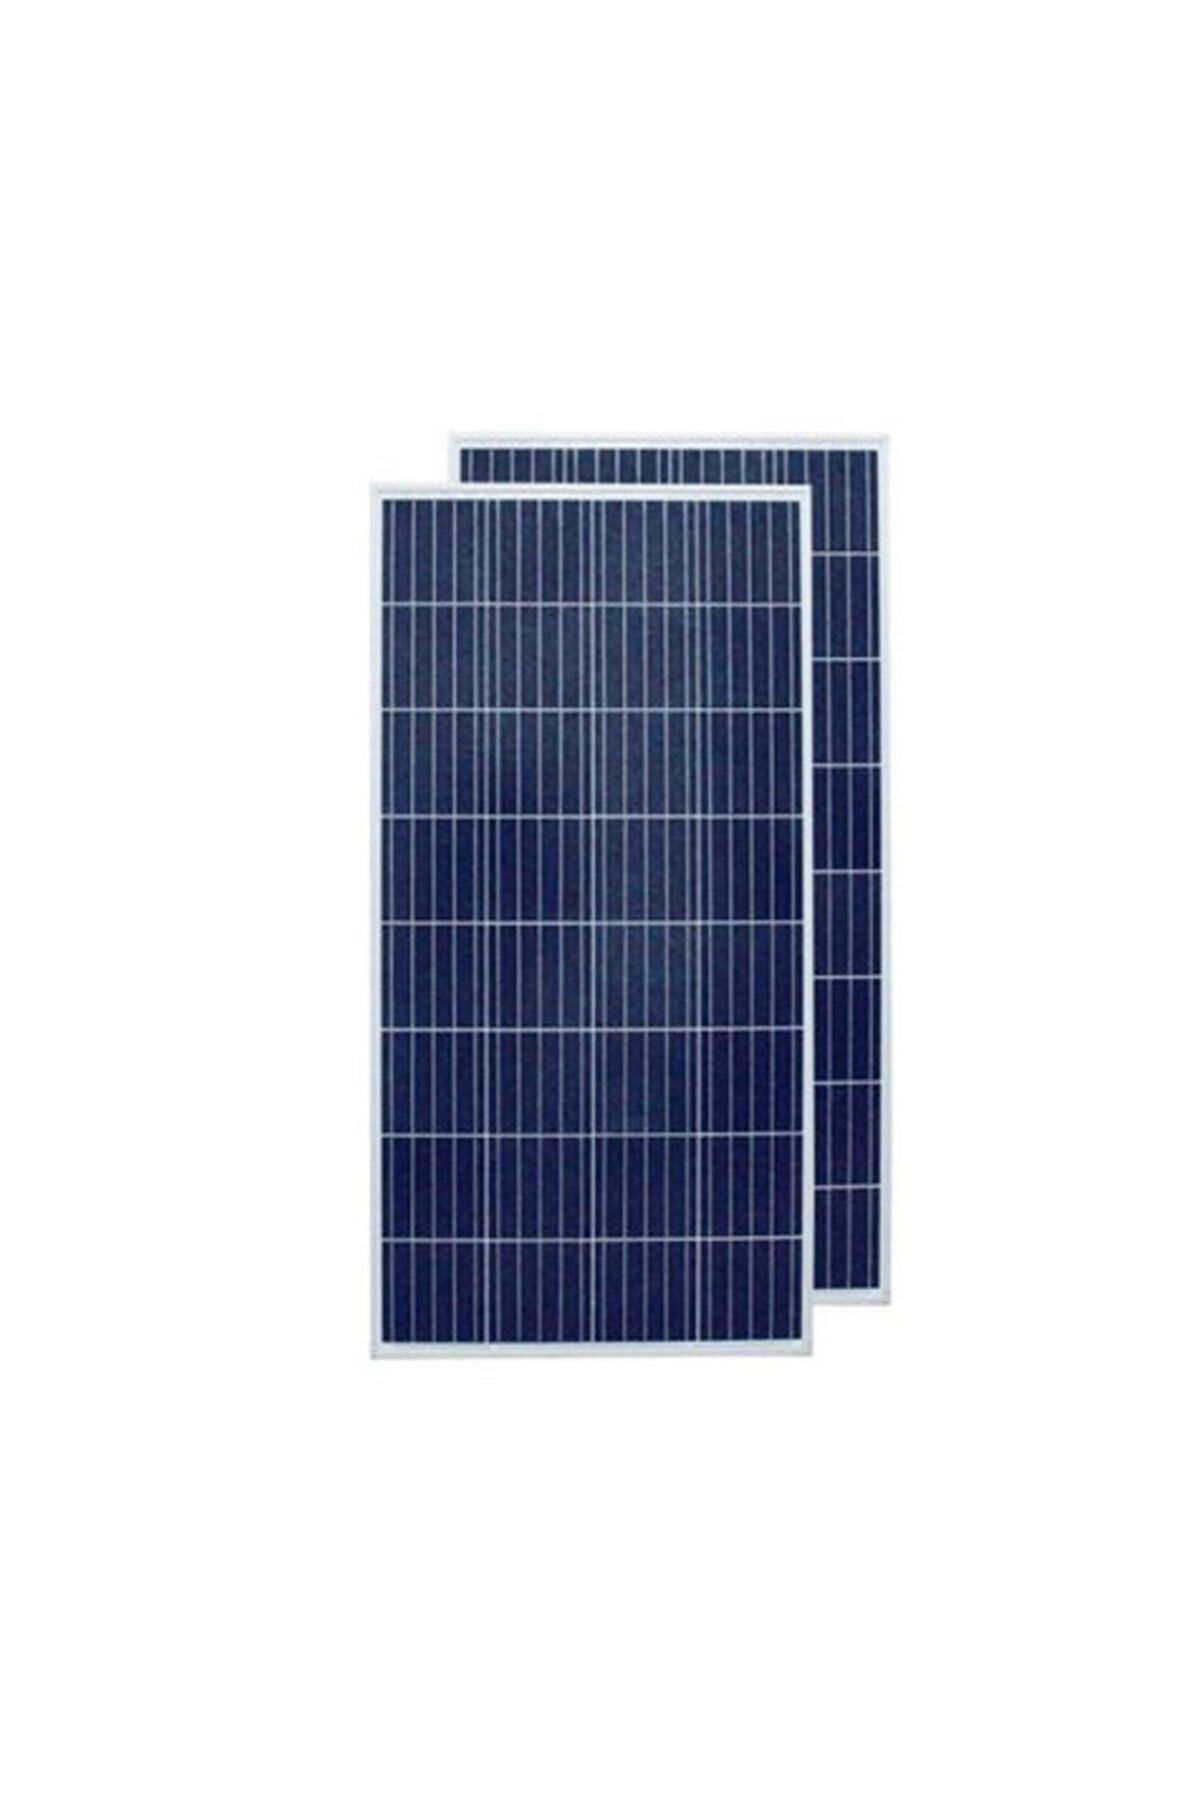 Lexron 170 Watt Polikristal Güneş Paneli